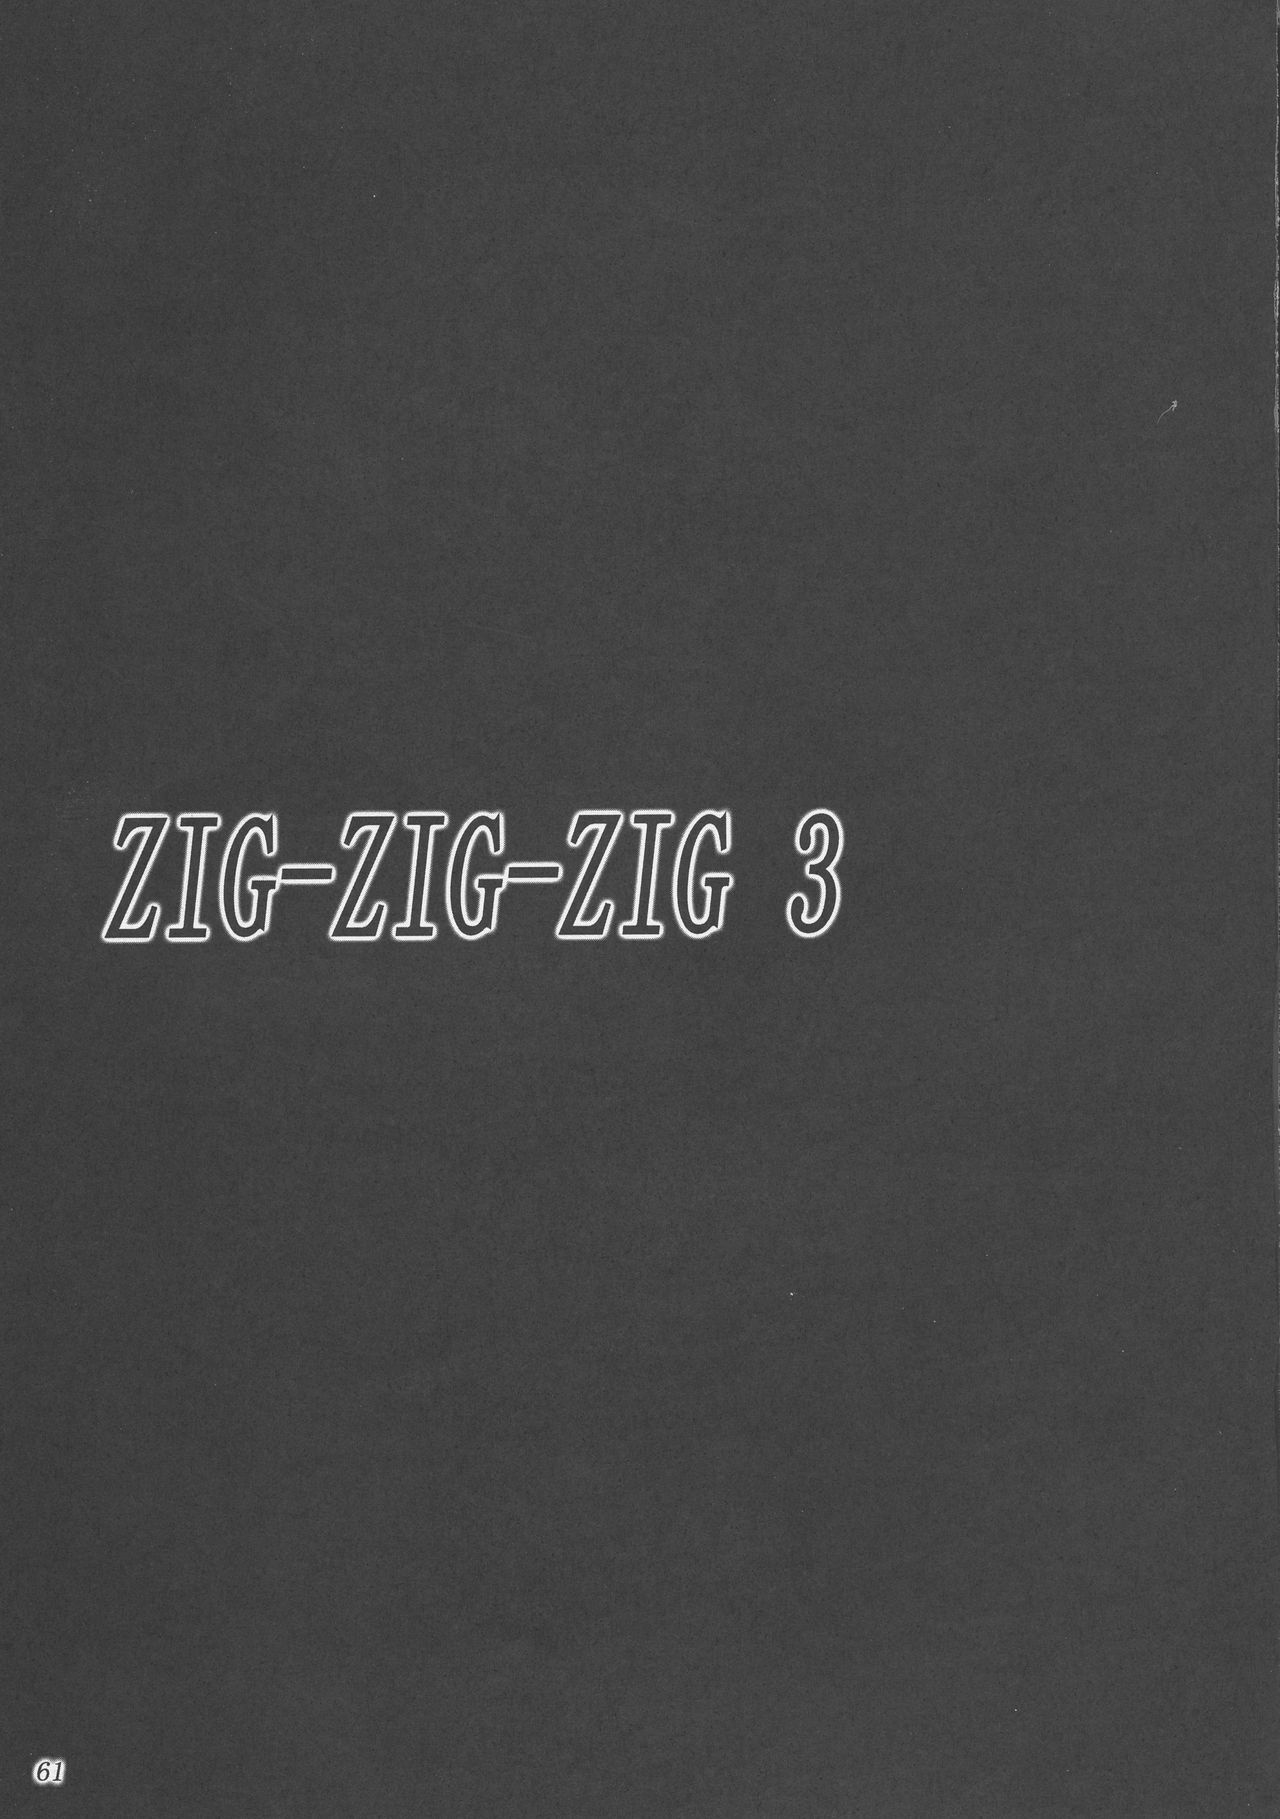 ZIG-ZIG-ZIG 3 -2004〜2005-